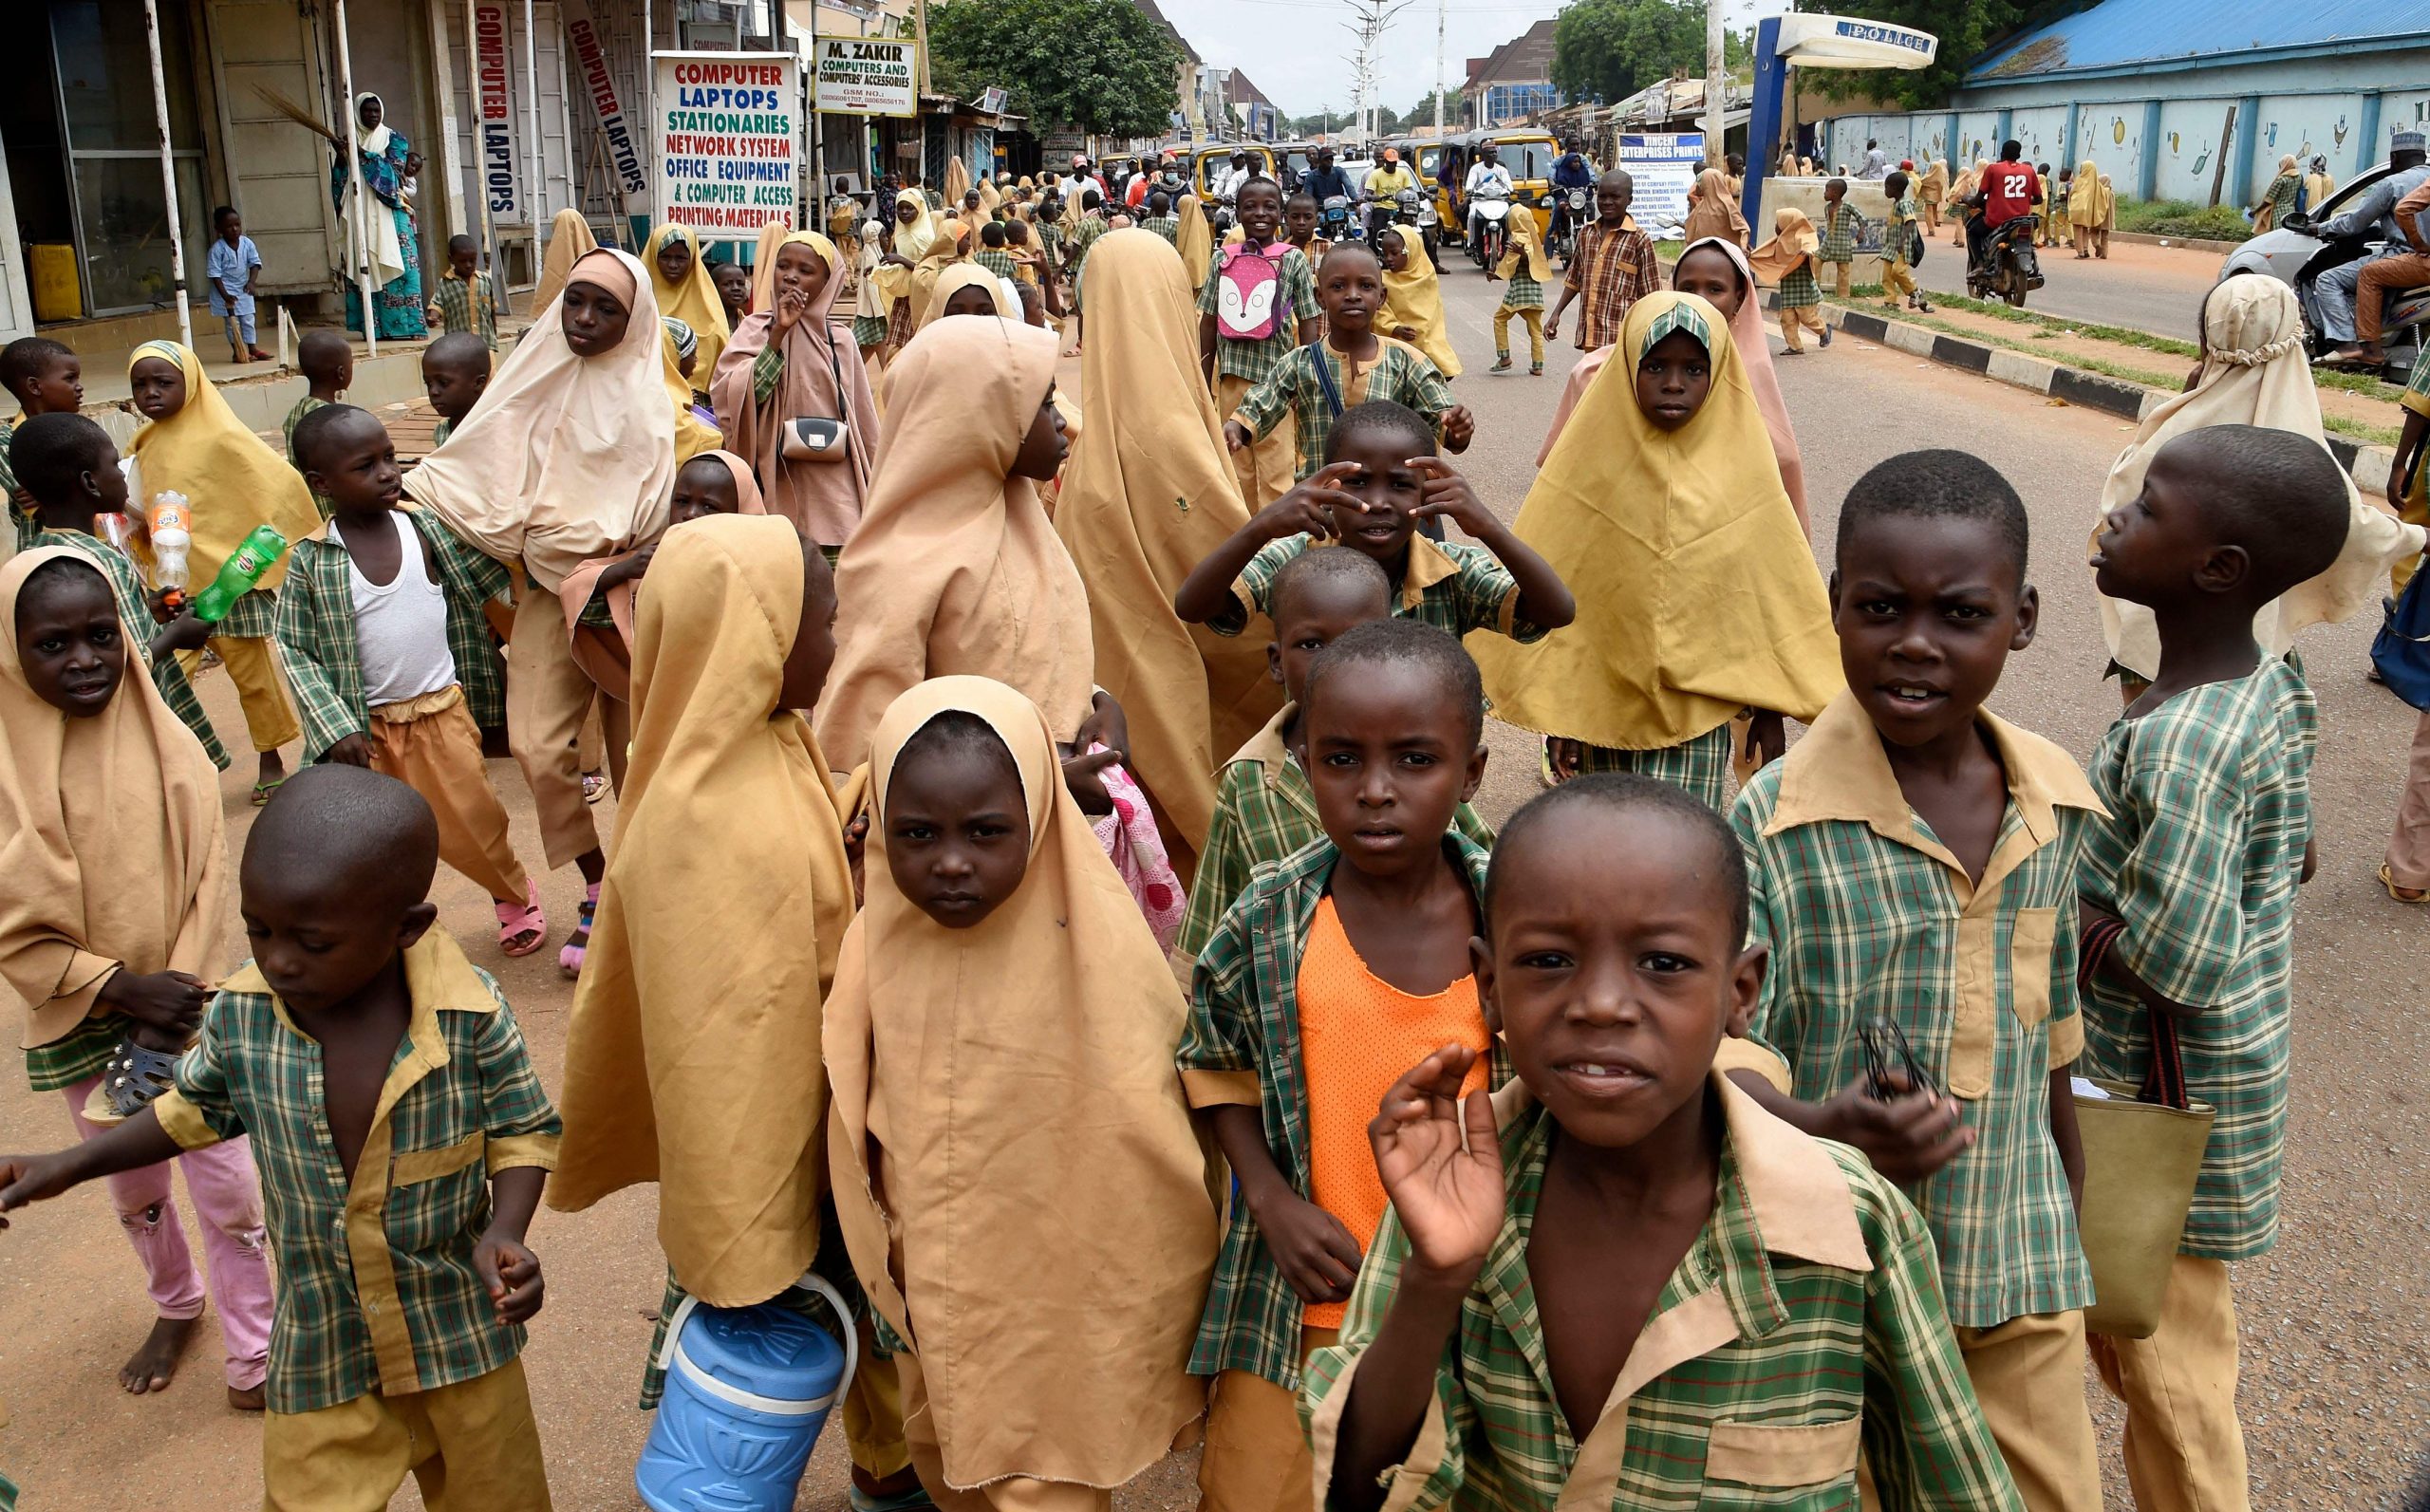 突袭尼日利亚土匪营区 安全部队救出187人质